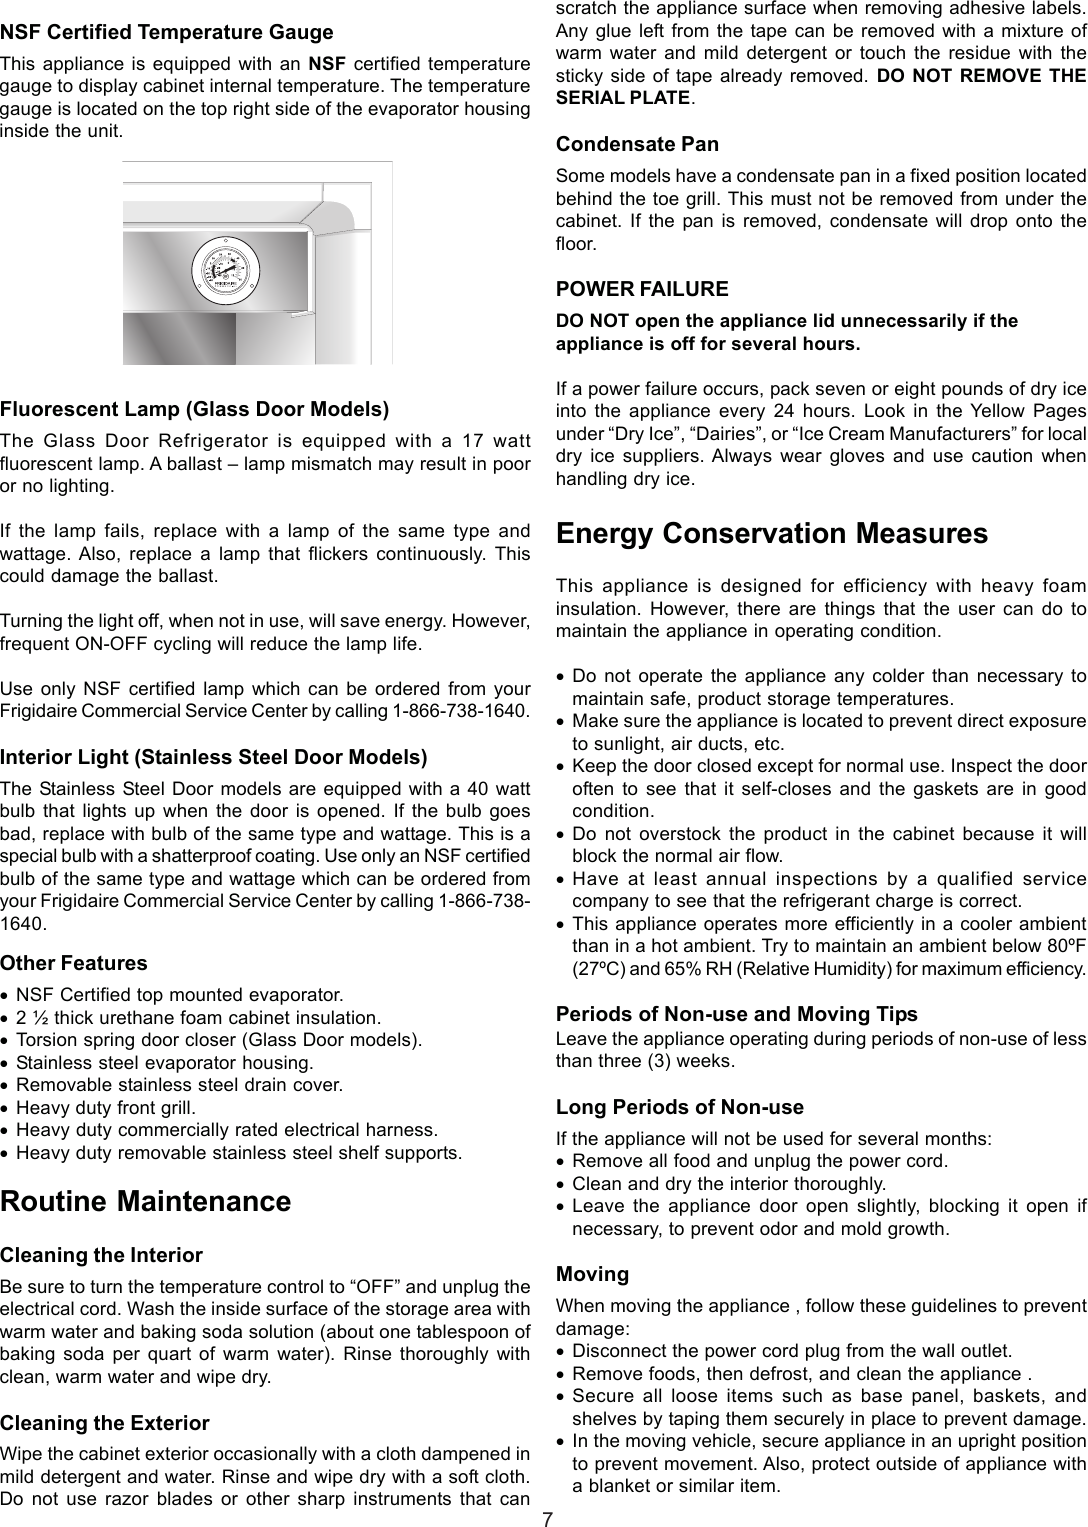 Page 7 of 11 - Frigidaire GLASS DOOR REFRIGERATOR 297068500 User Manual  To The 694005d6-a109-4e75-afda-e8bf1263caf4